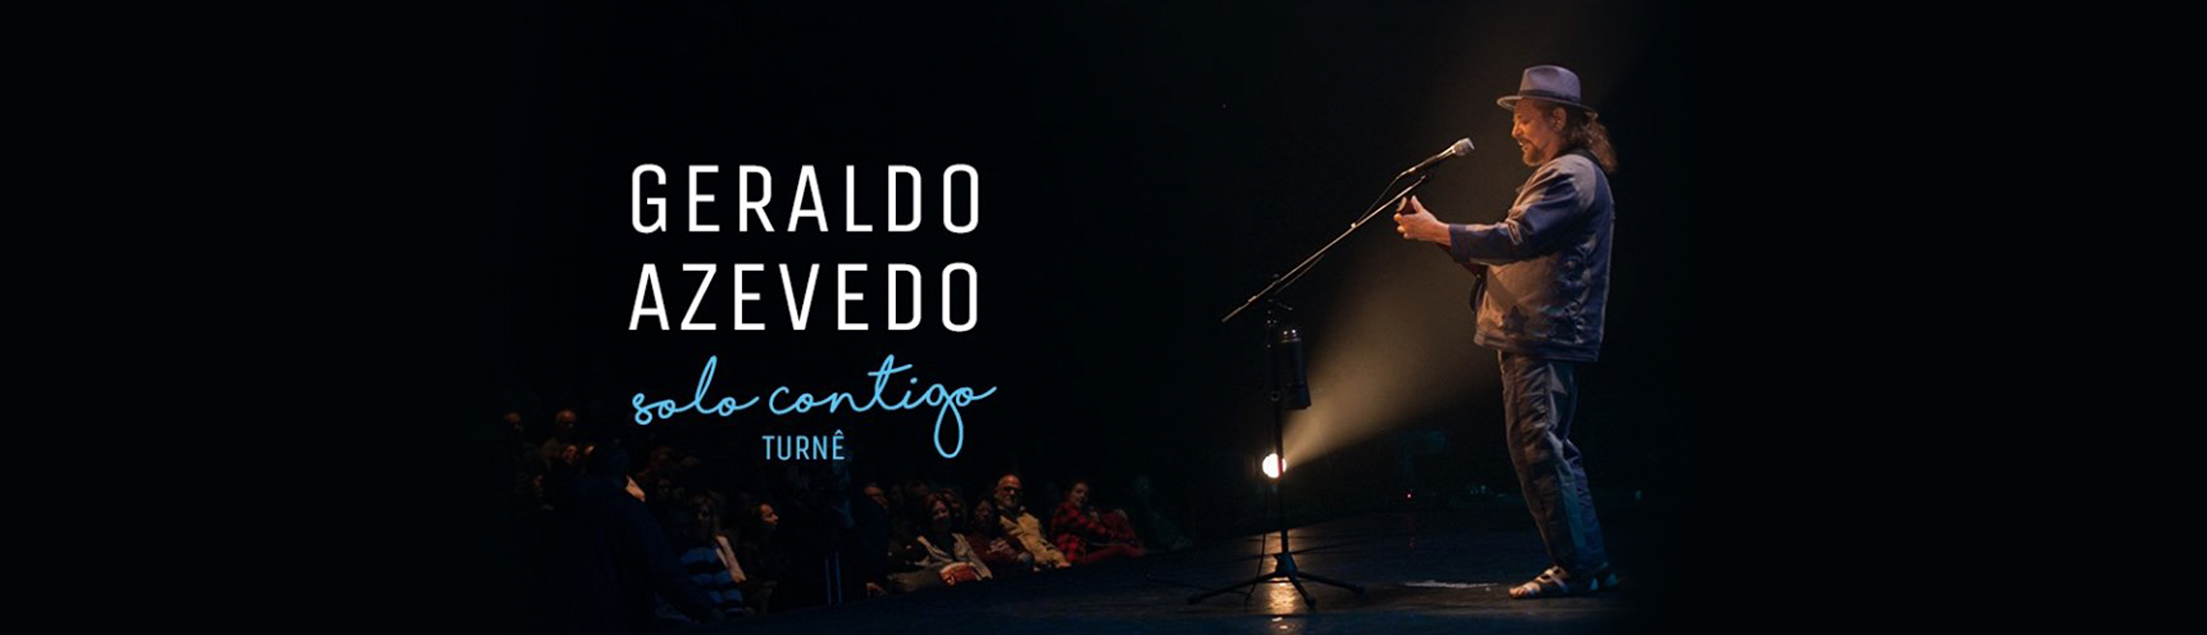 Geraldo Azevedo 'Solo Contigo' no Teatro Rival Petrobras